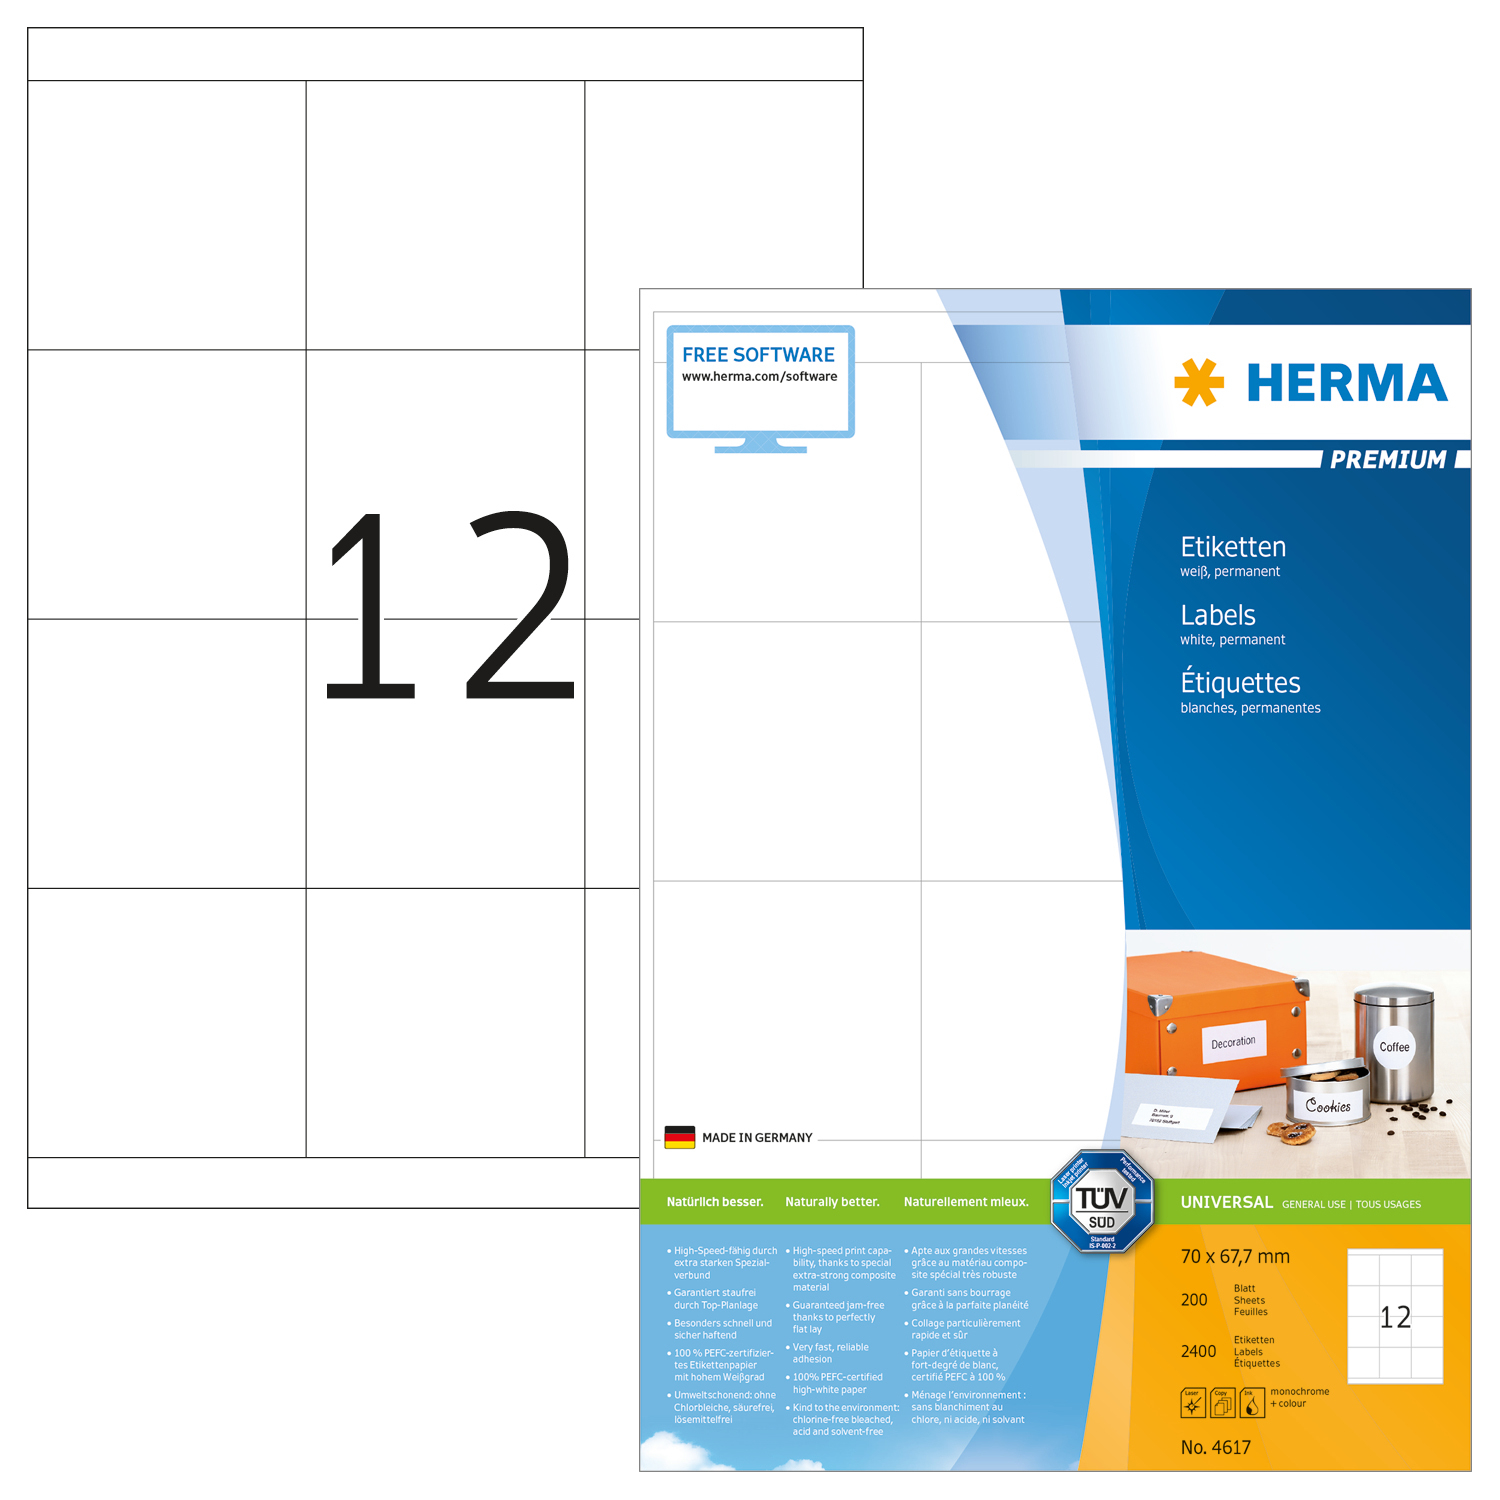 HERMA Etiquettes Premium 70×67,7mm 4617 blanc 2400 pcs.